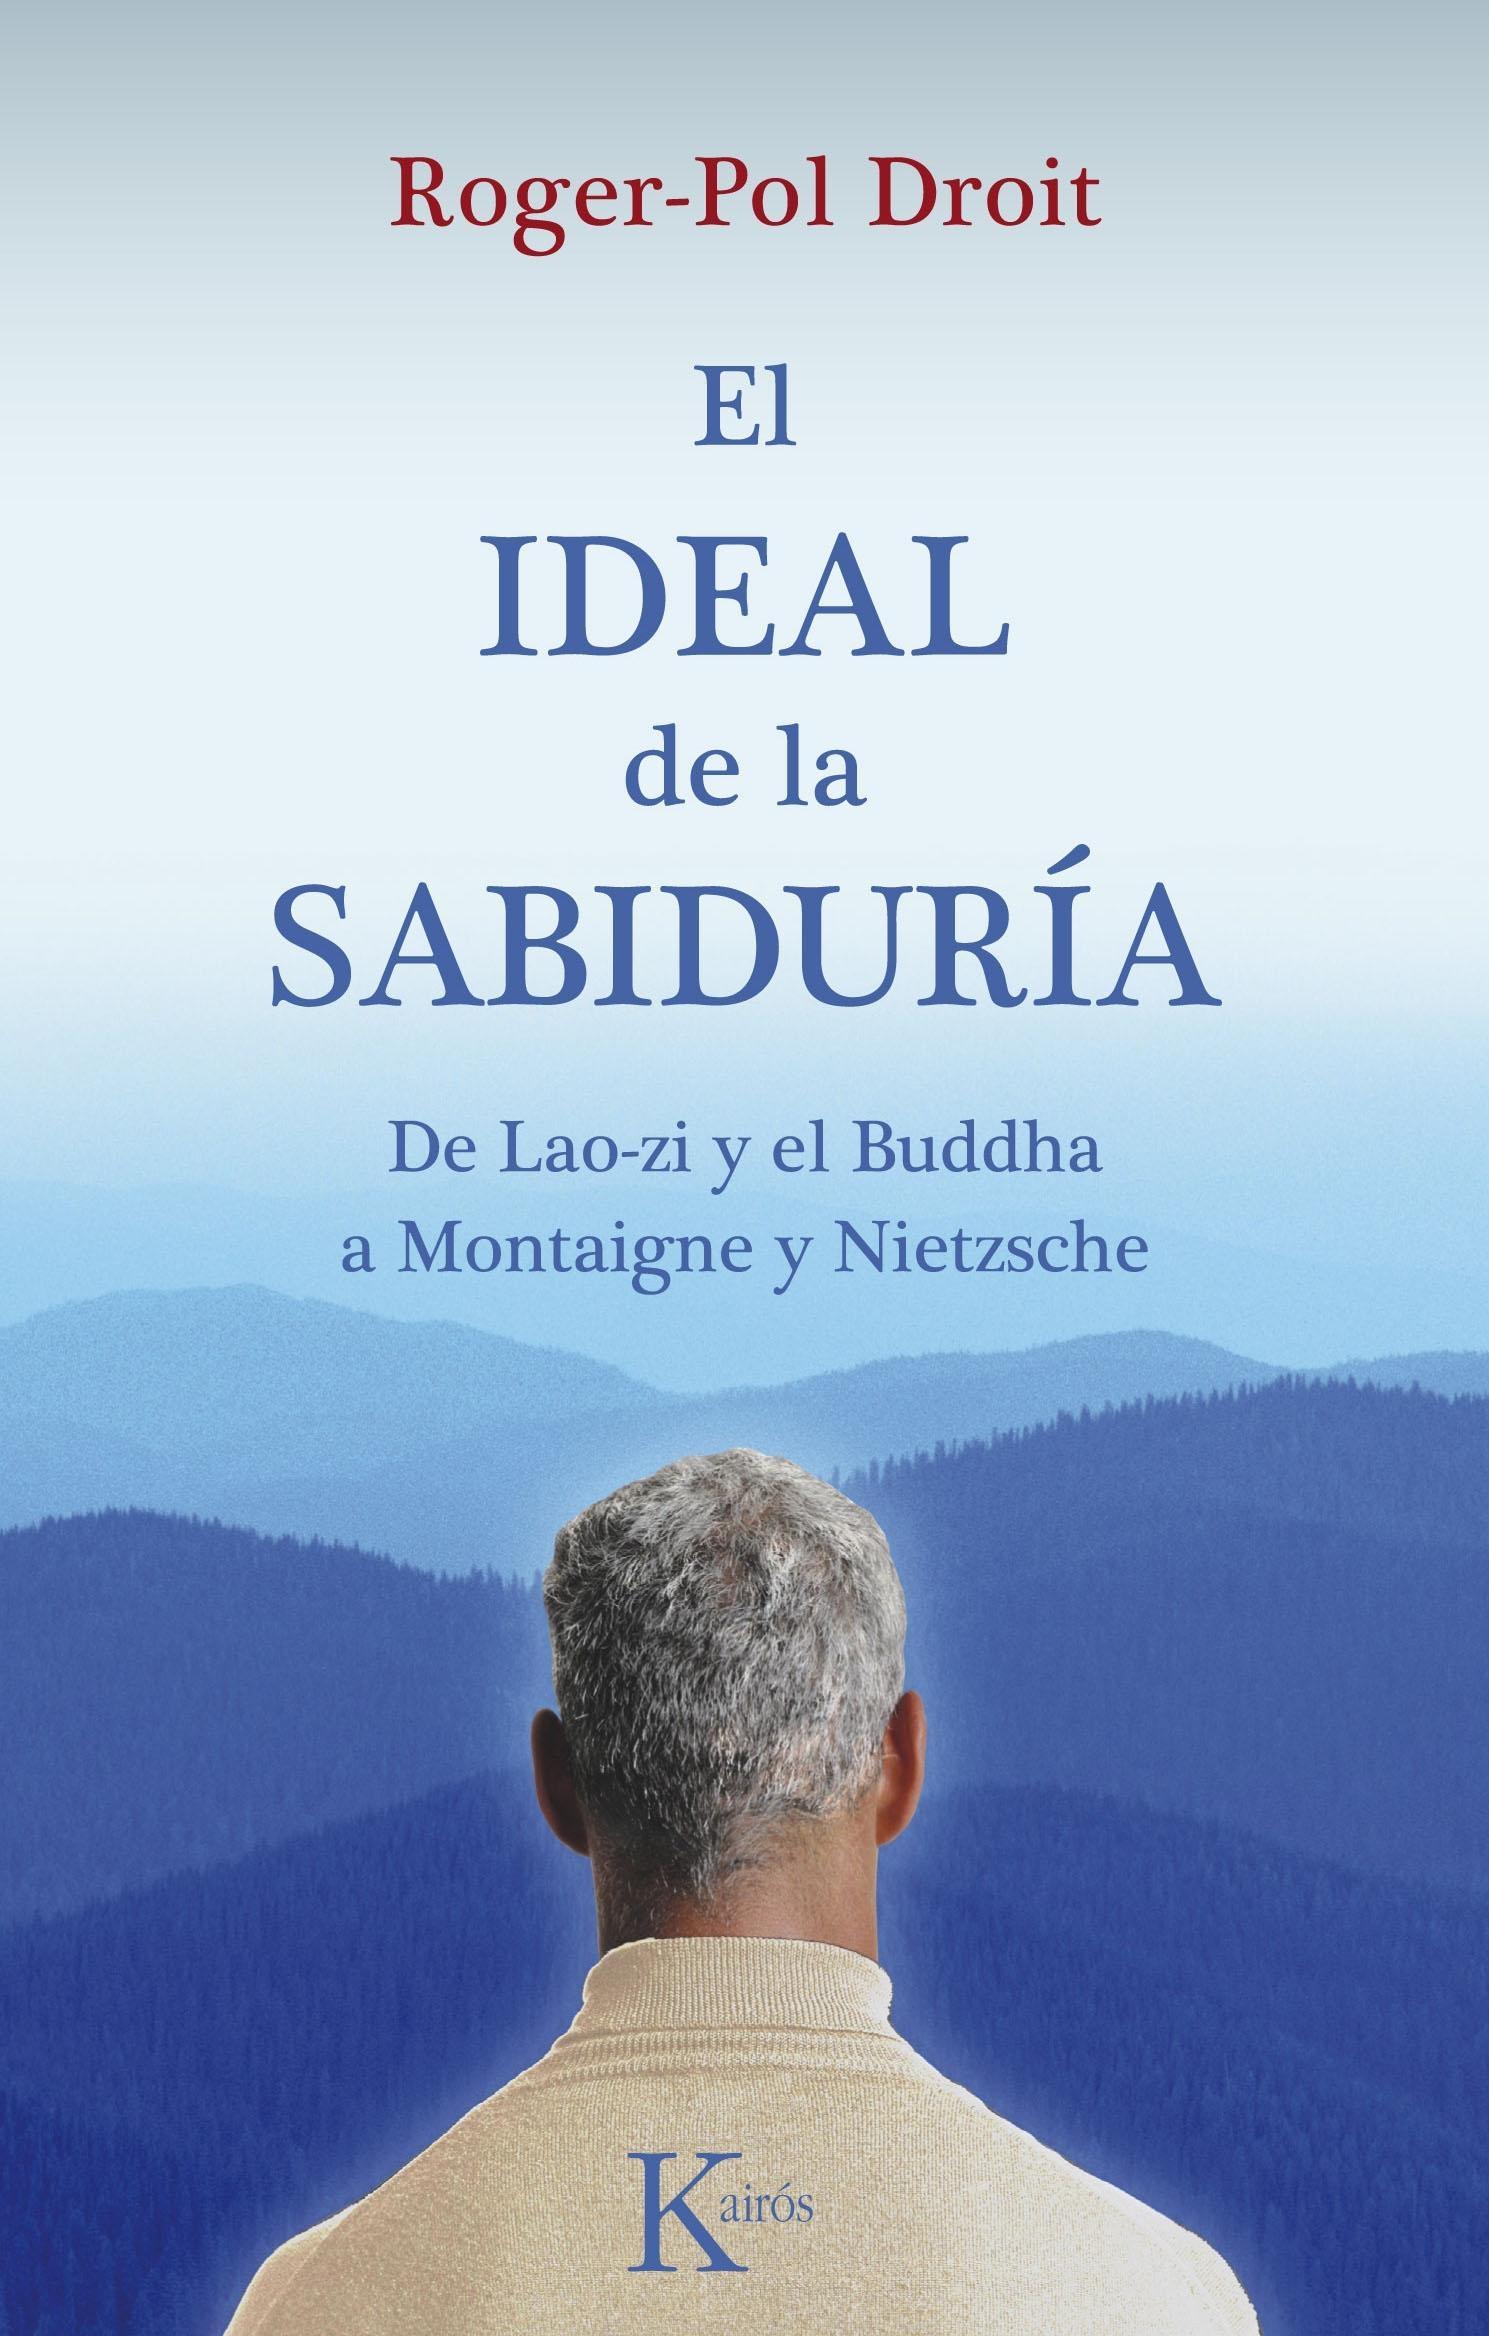 Ideal de la Sabiduria "De Lao Zi y el Buddha a Montaigne y Nietzsche"